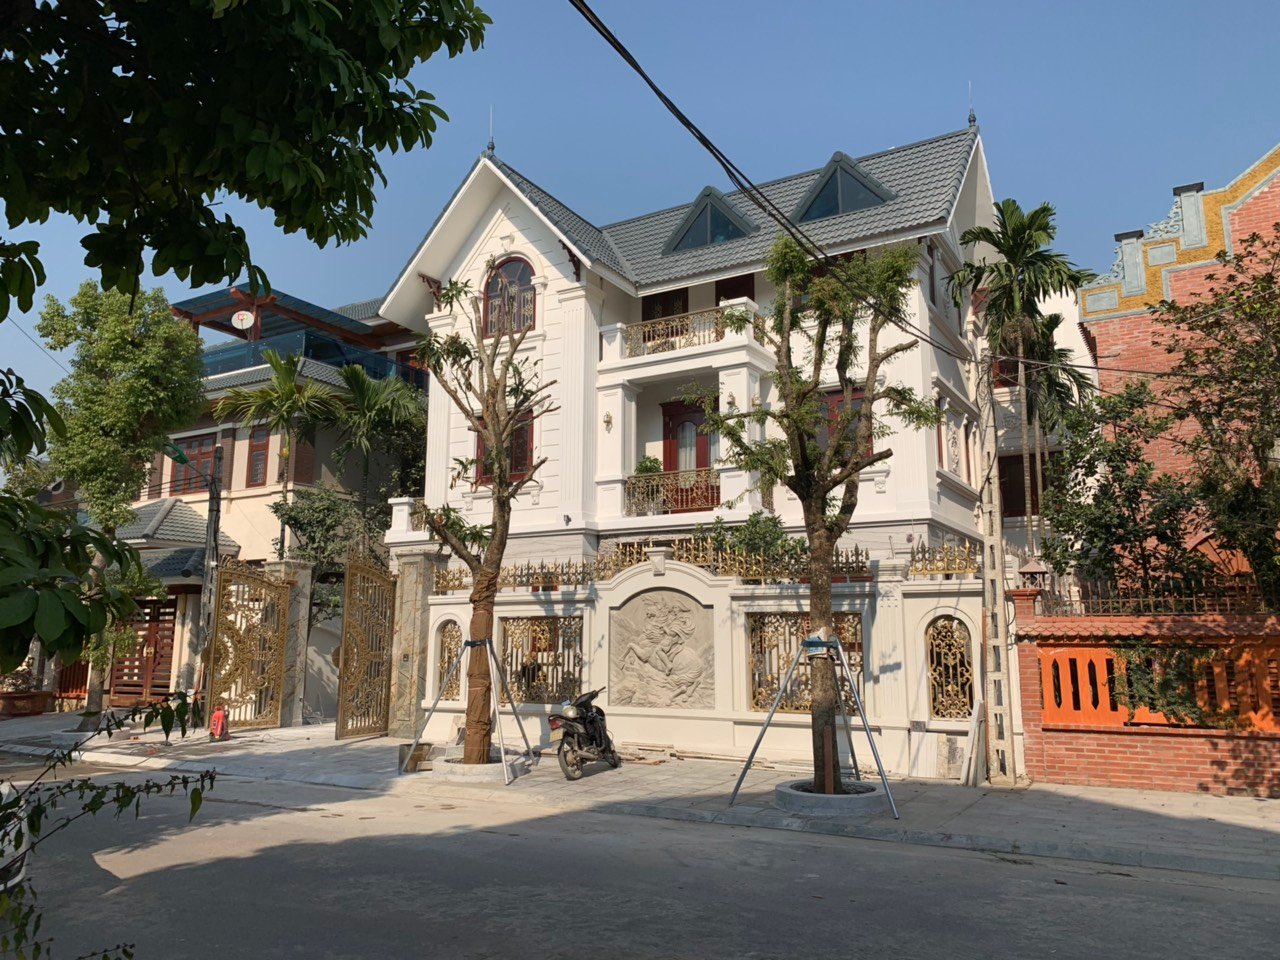 Thiết kế Biệt Thự tại Thanh Hóa Cải tạo biệt thự Bình Minh; 1576577800 7